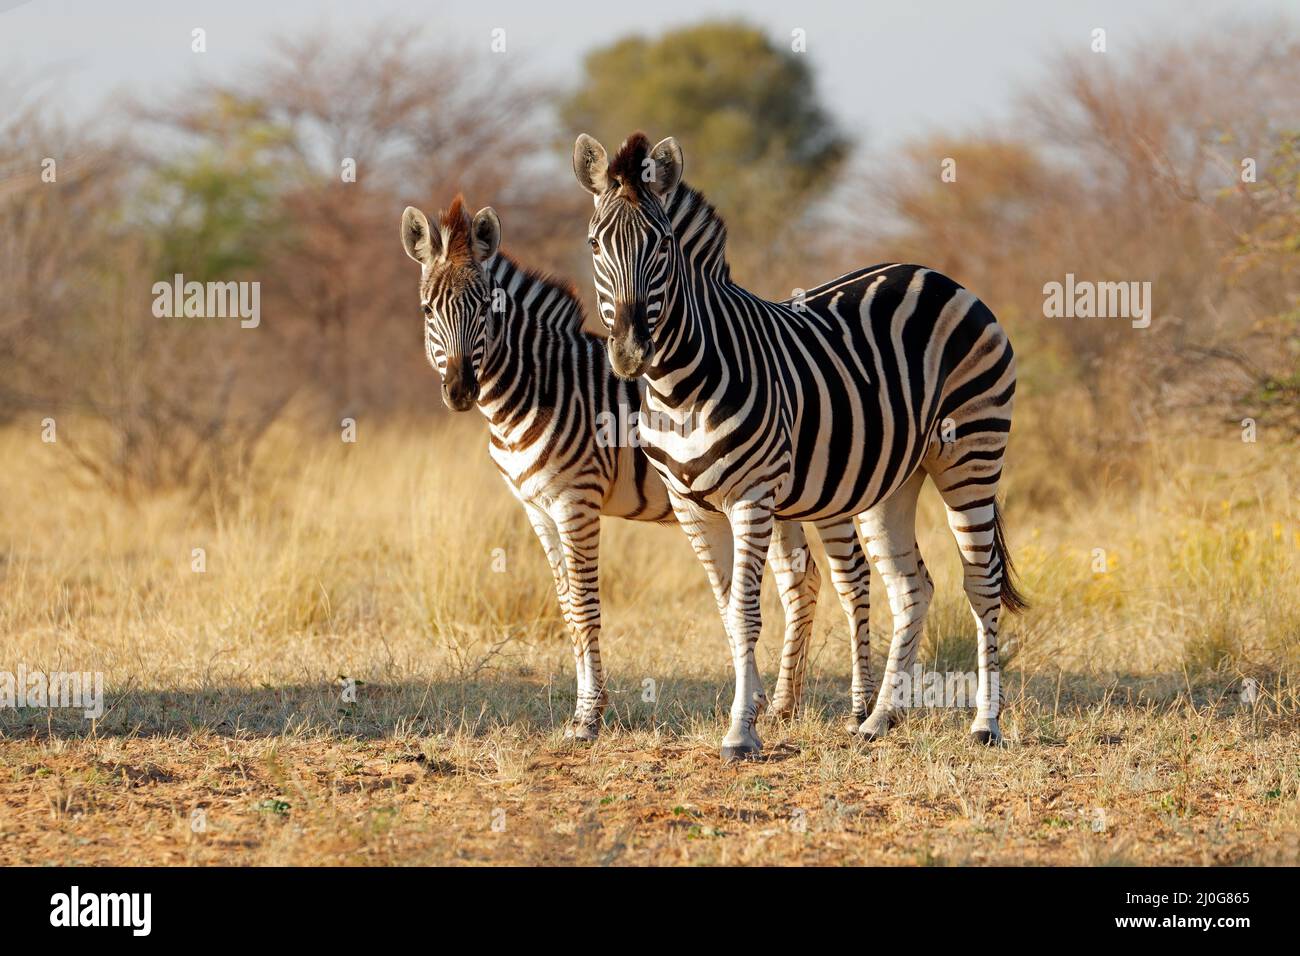 Dos llanuras cebras (Equus burchelli) en su hábitat natural, Sudáfrica Foto de stock